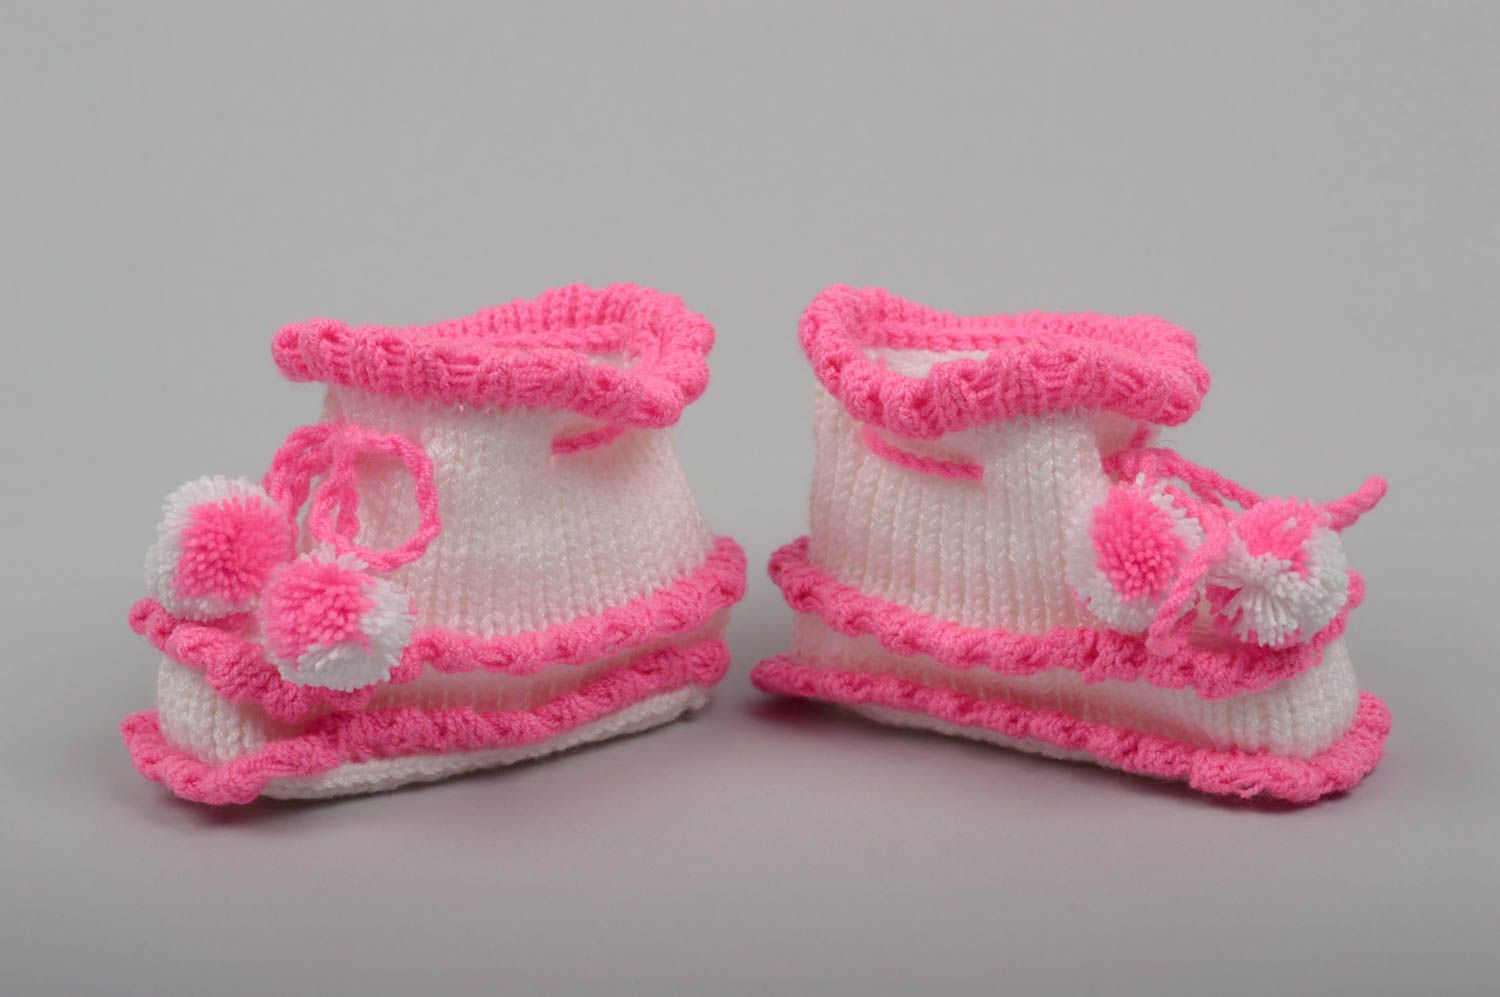 Patucos tejidos artesanales regalos originales zapatos de bebé blanquirosados foto 1